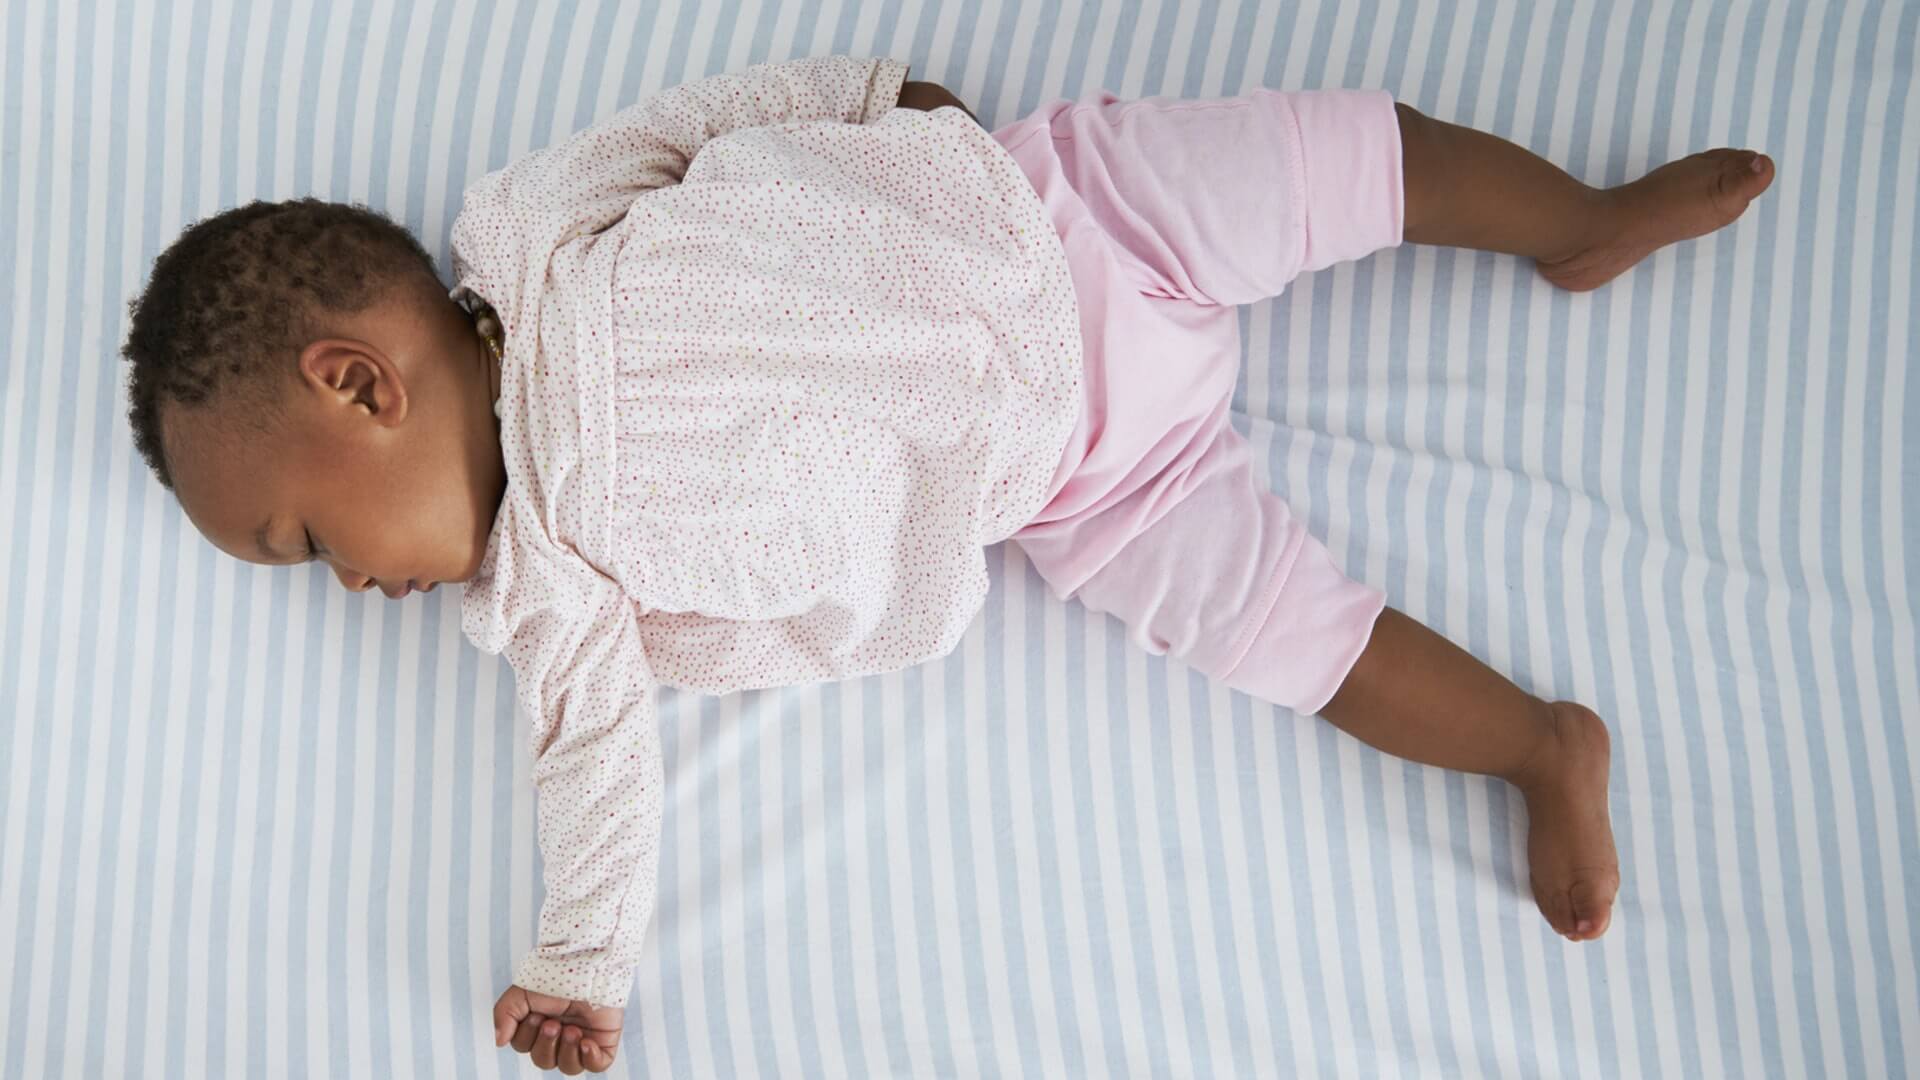 لماذا يصنع طفلي الفقاعات أثناء نومه؟               